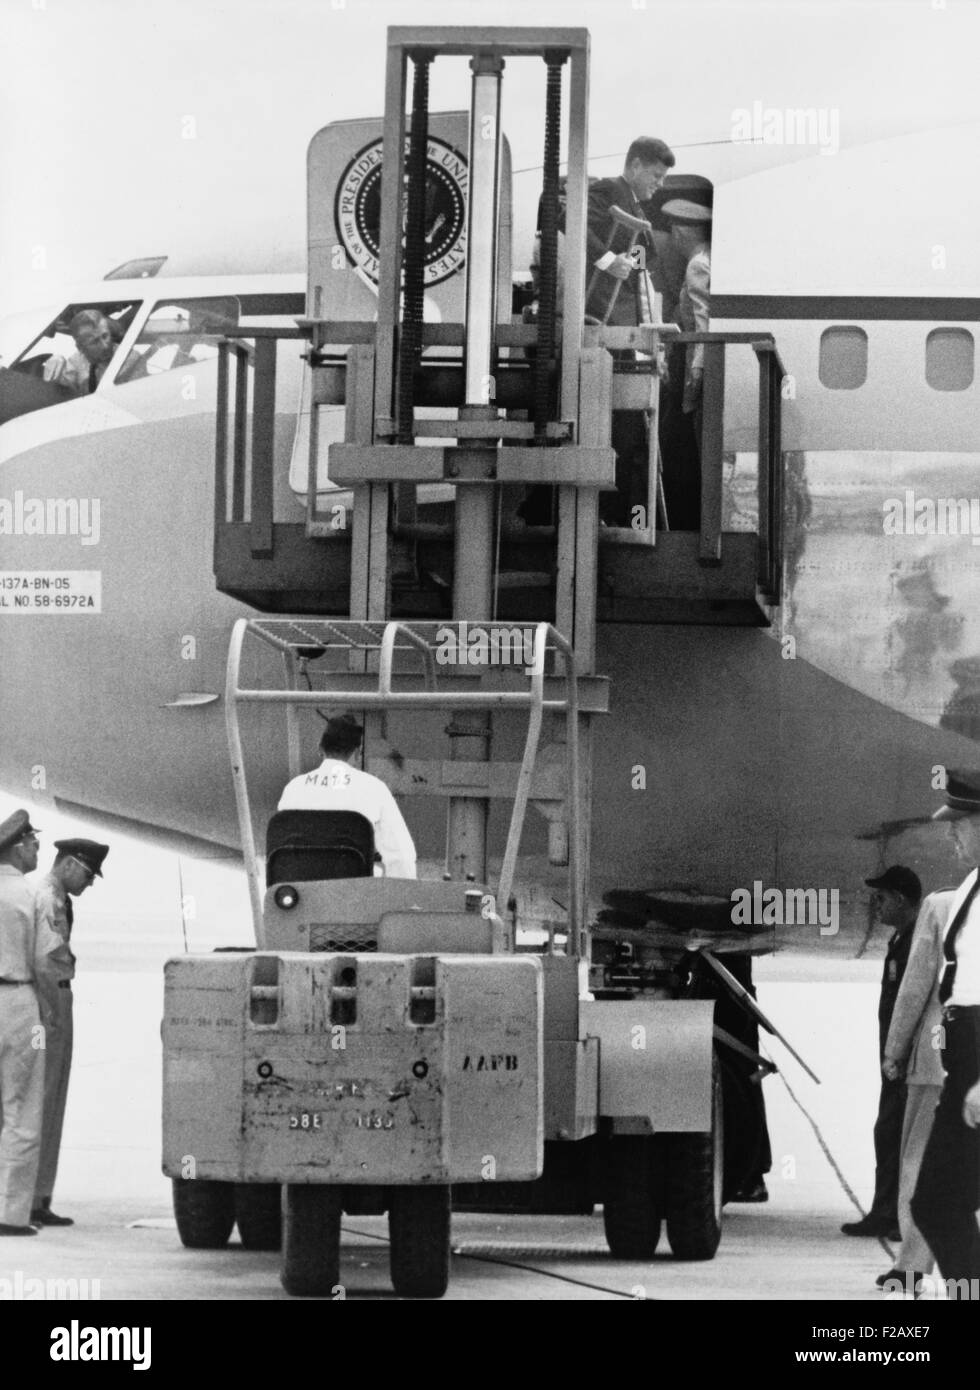 Präsident John F. Kennedy auf Krücken Aussteigen aus der Air Force One von Gabelstapler. Kennedy verletzt seine hinteren Bepflanzung ein zeremonielle Baum während eines Staates Besuch in Kanada am 16. Mai 1961. (BSLOC 2015 2 224) Stockfoto